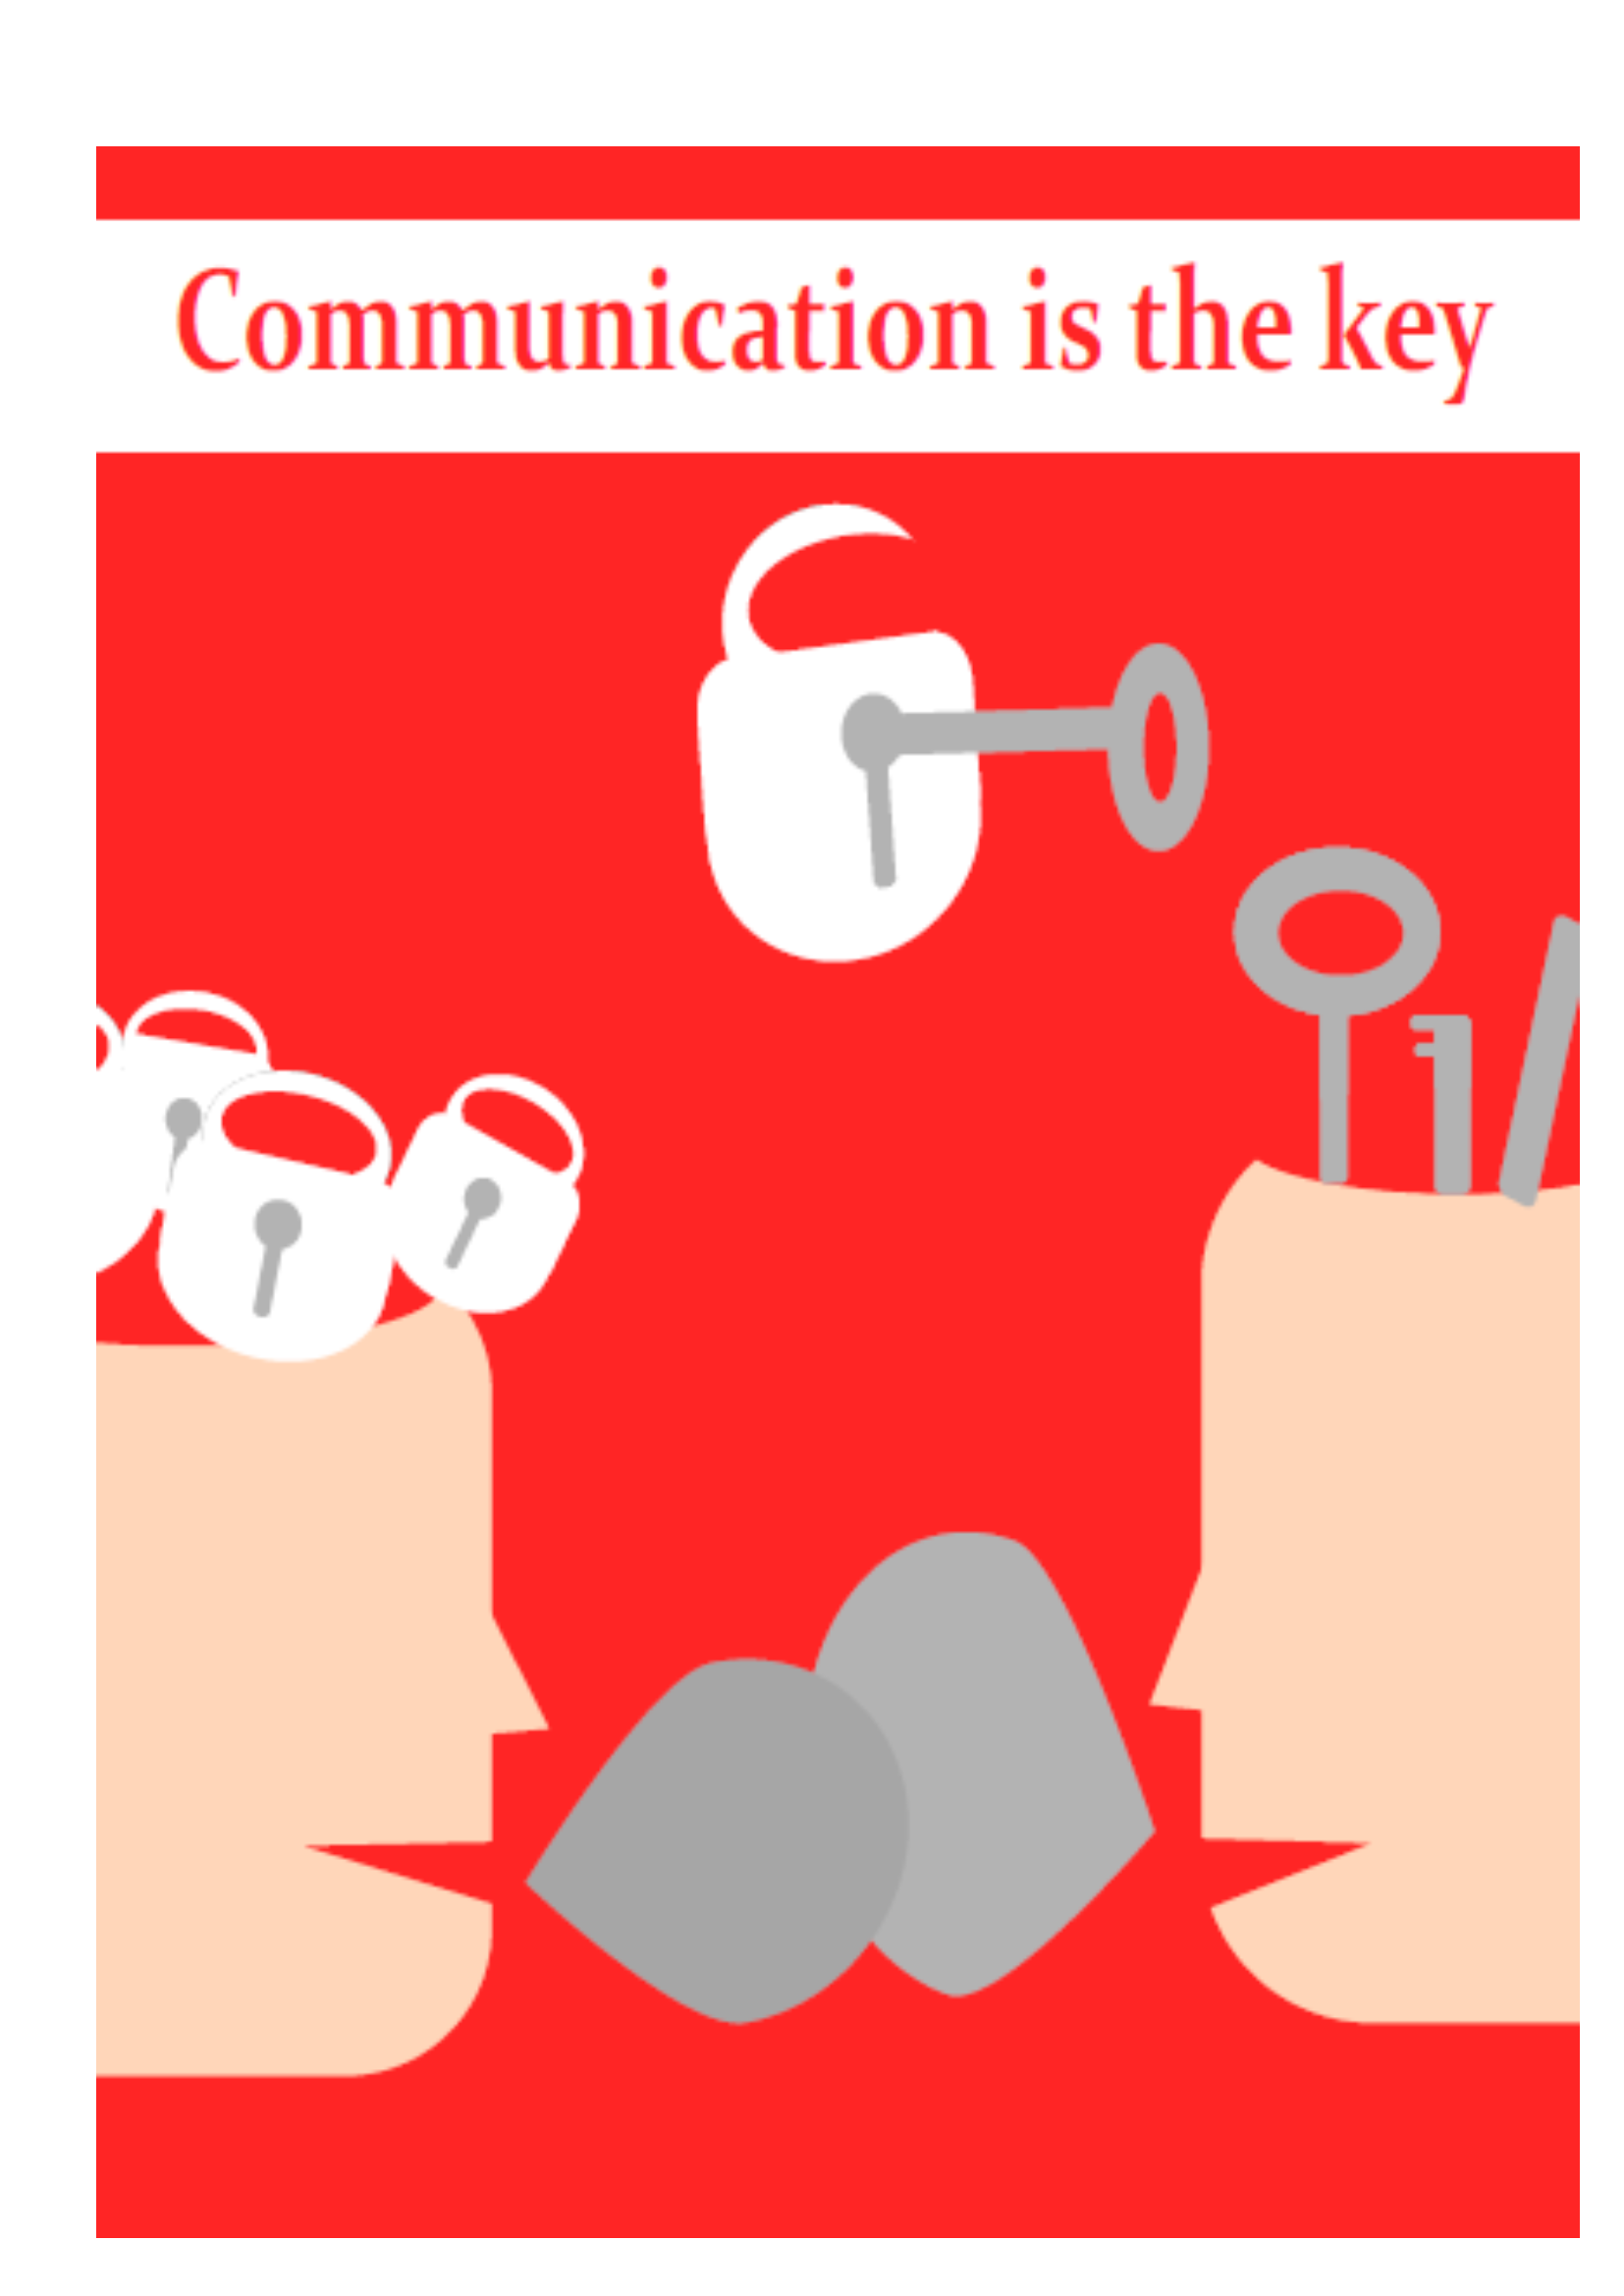 Das Bild trägt die Überschrift "Communication is the key" und zeigt zwei Köpfe, die gegenüber voneinander sind. In der Mitte der beiden Köpfe sieht man ein Schloss mit einem Schlüssel darin. Der linke Kopf ist oberhalb geöffnet und mit mehreren Schlössern gefüllt, der rechte Kopf ist ebenfalls geöffnet und hat mehrere Schlüssel darin.